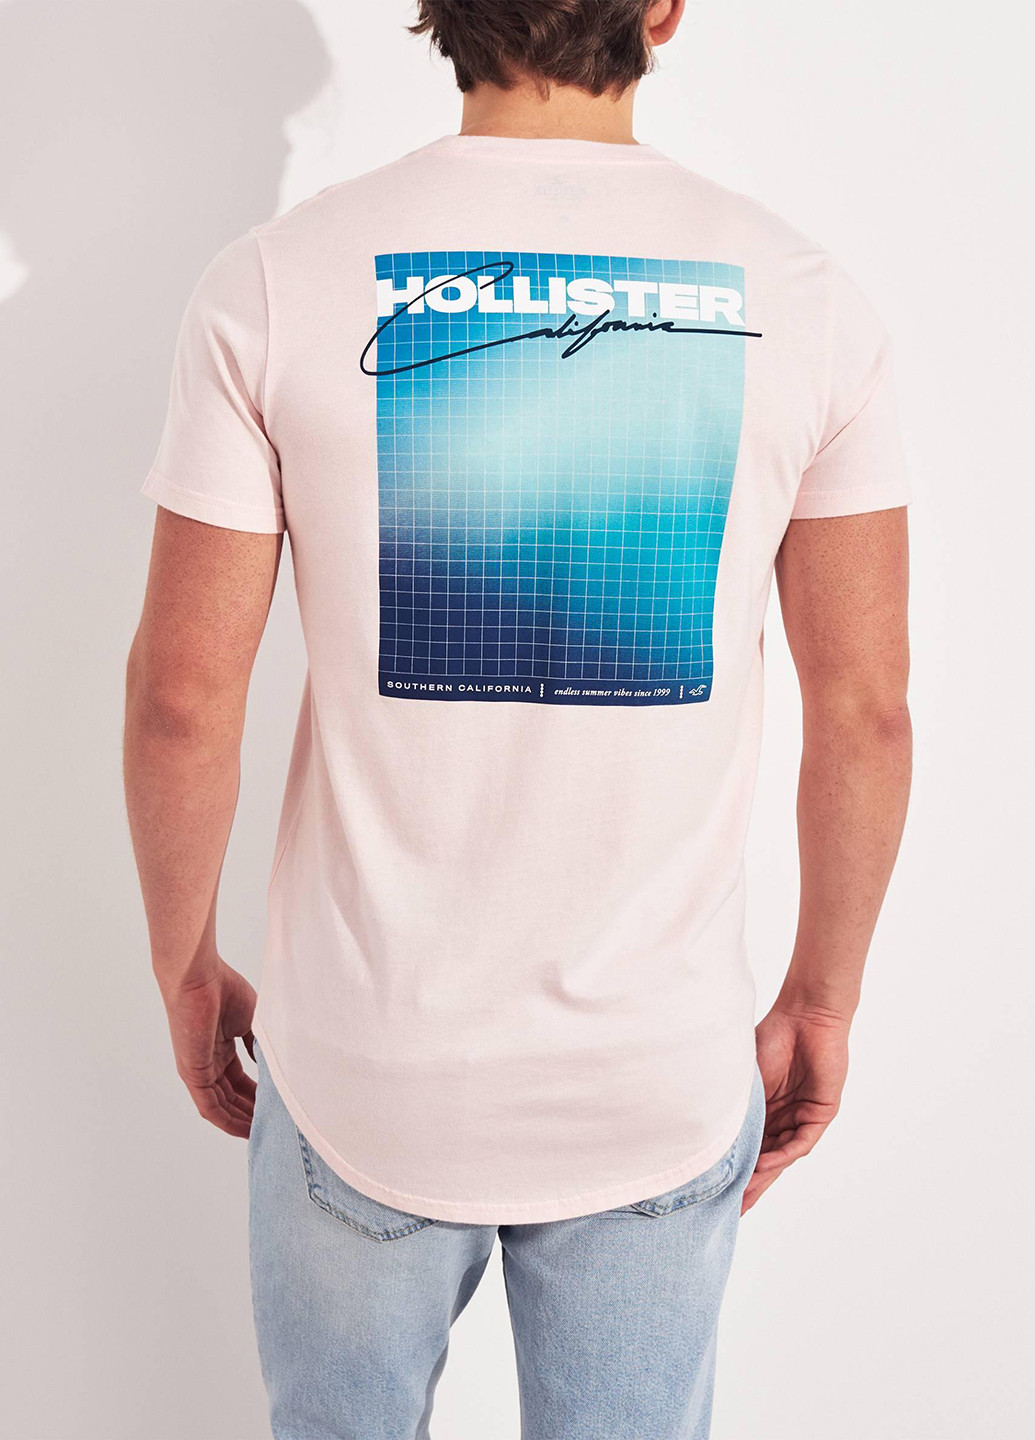 Світло-рожева футболка Hollister